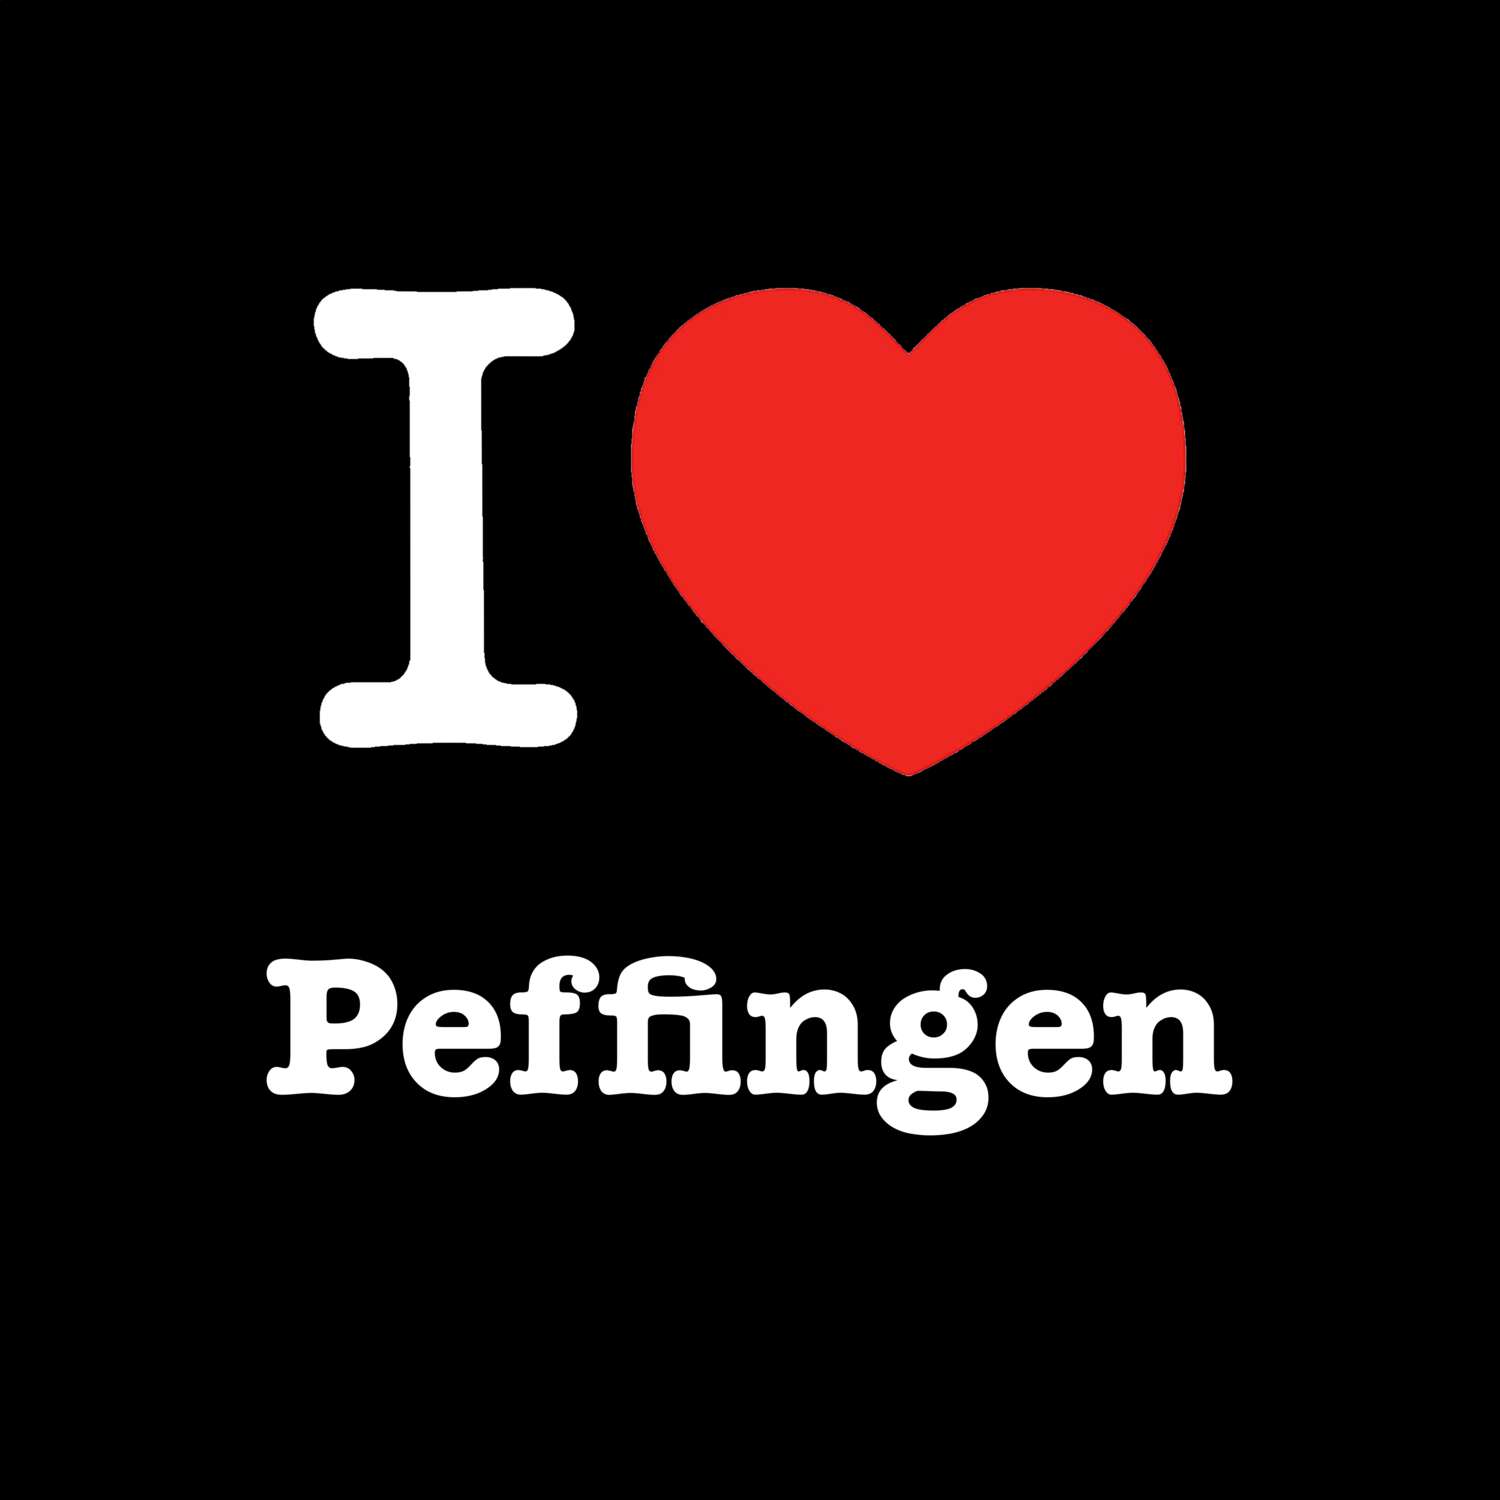 Peffingen T-Shirt »I love«